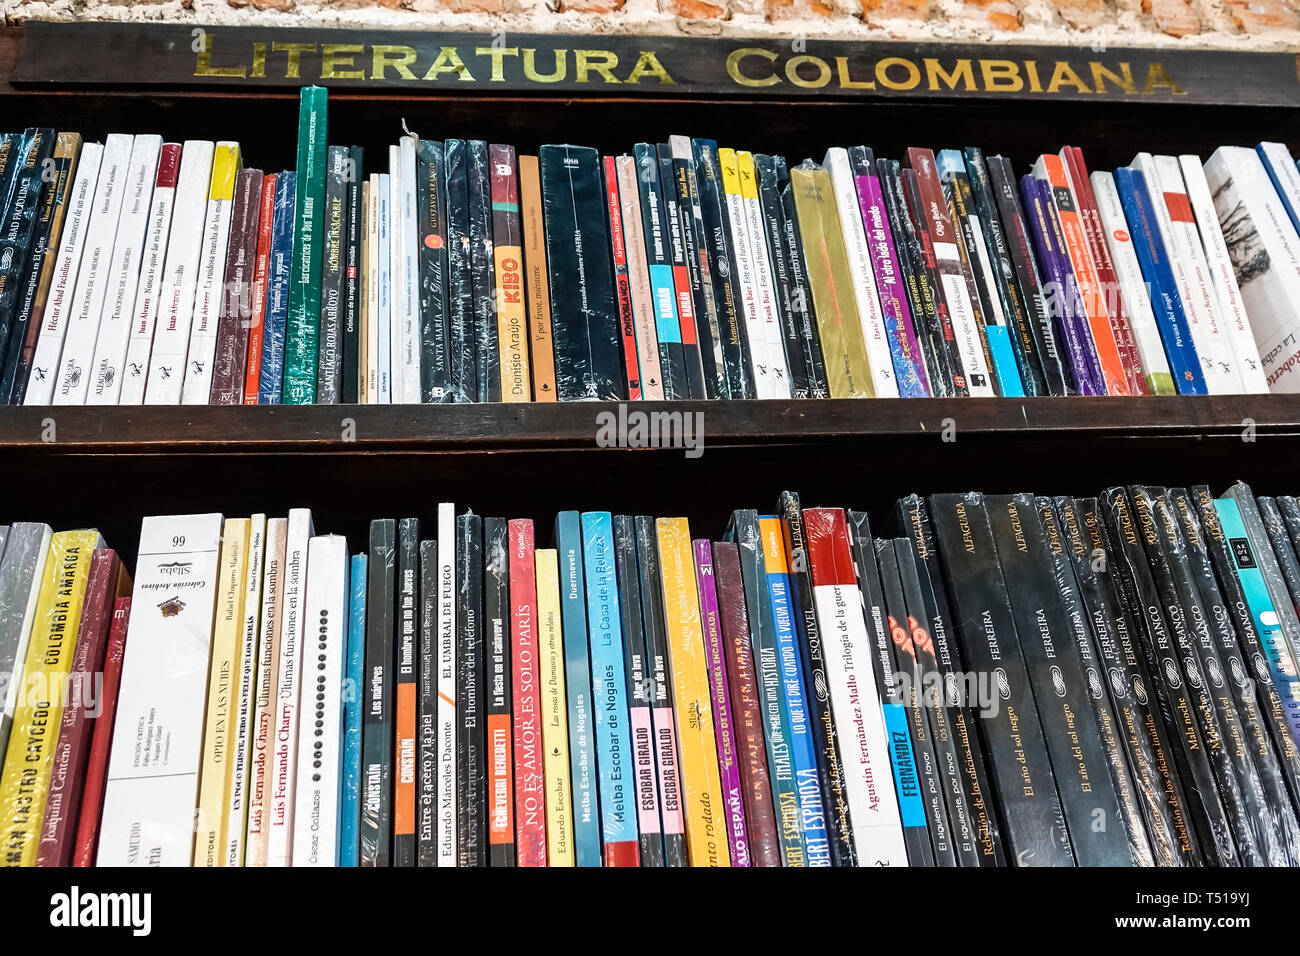 Cartagena Kolumbien, Abaco Libros y Cafe, Abacus Buchhandlung Café, innen, Bücherregal, kolumbianische Literatur, Bücher, Besucher reisen Reise Tour touri Stockfoto